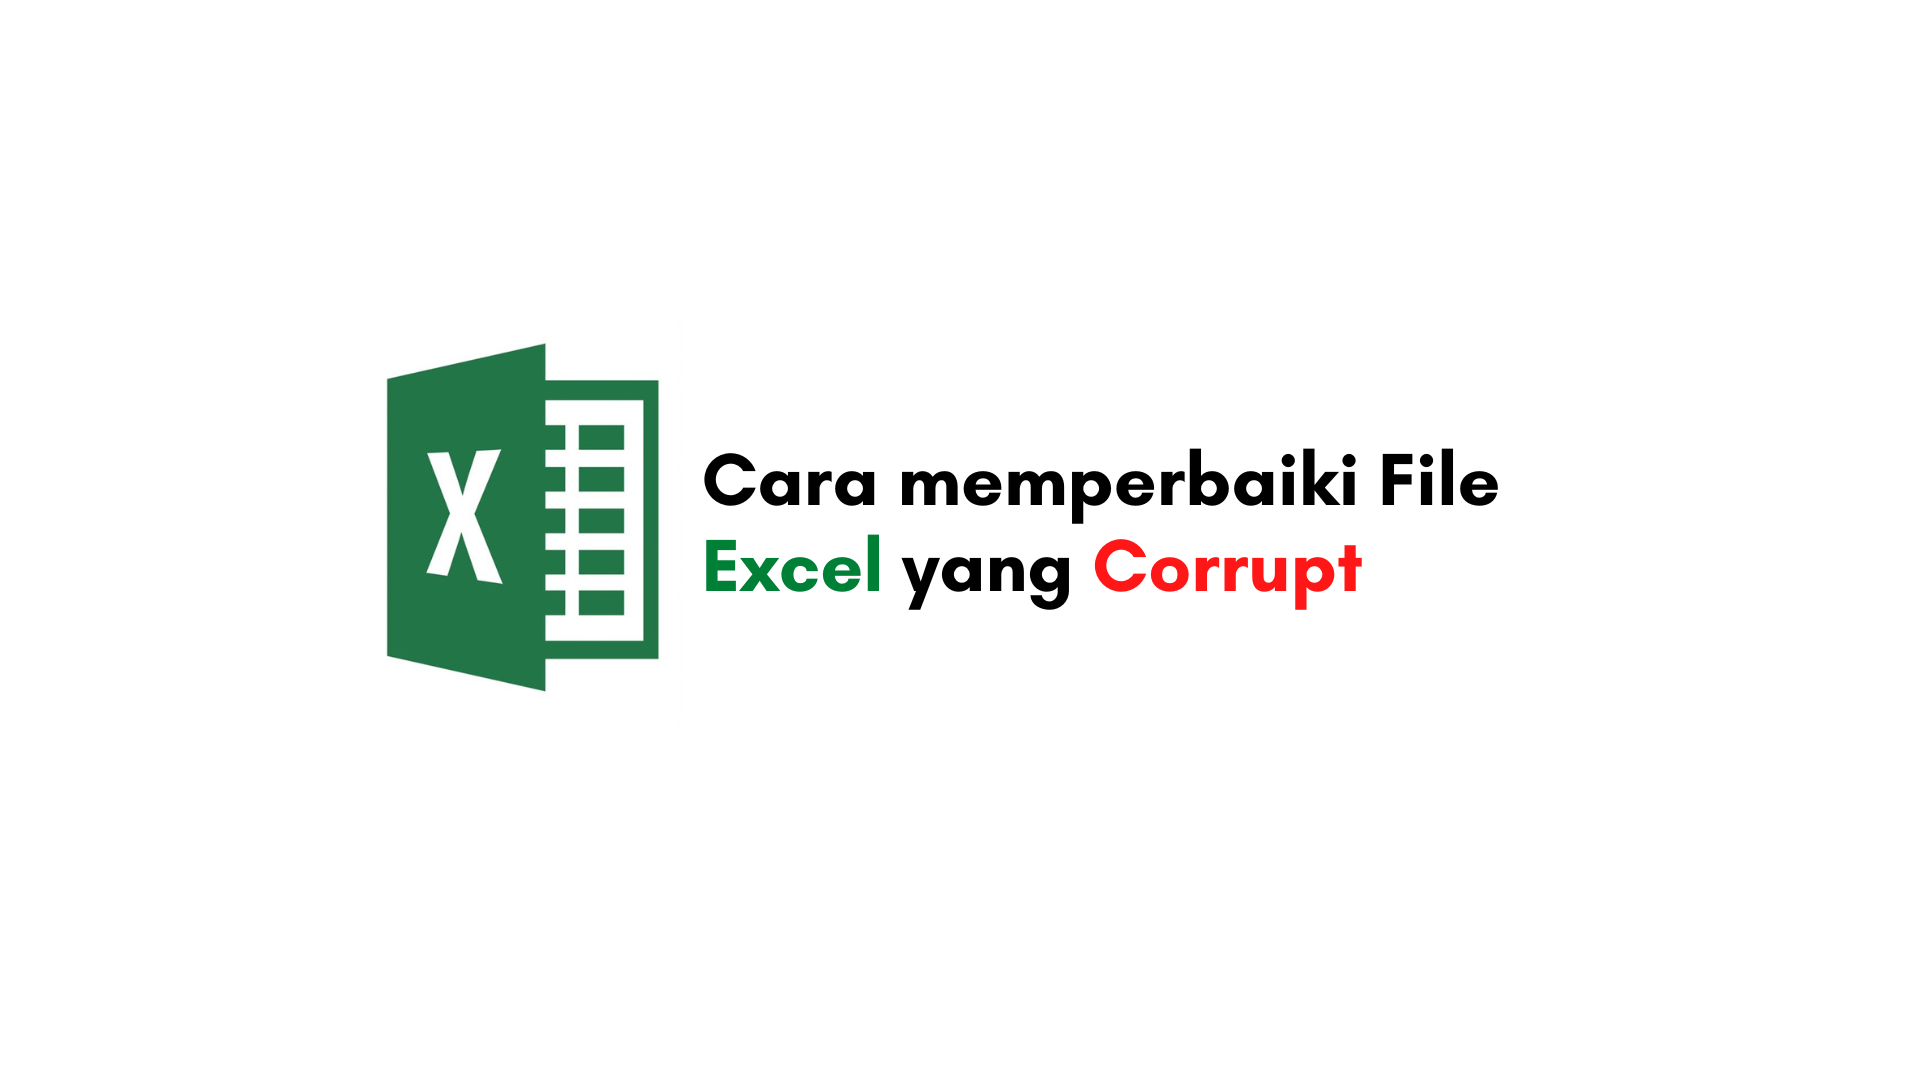 Bagaimana Cara memperbaiki File Excel yang Corrupt?